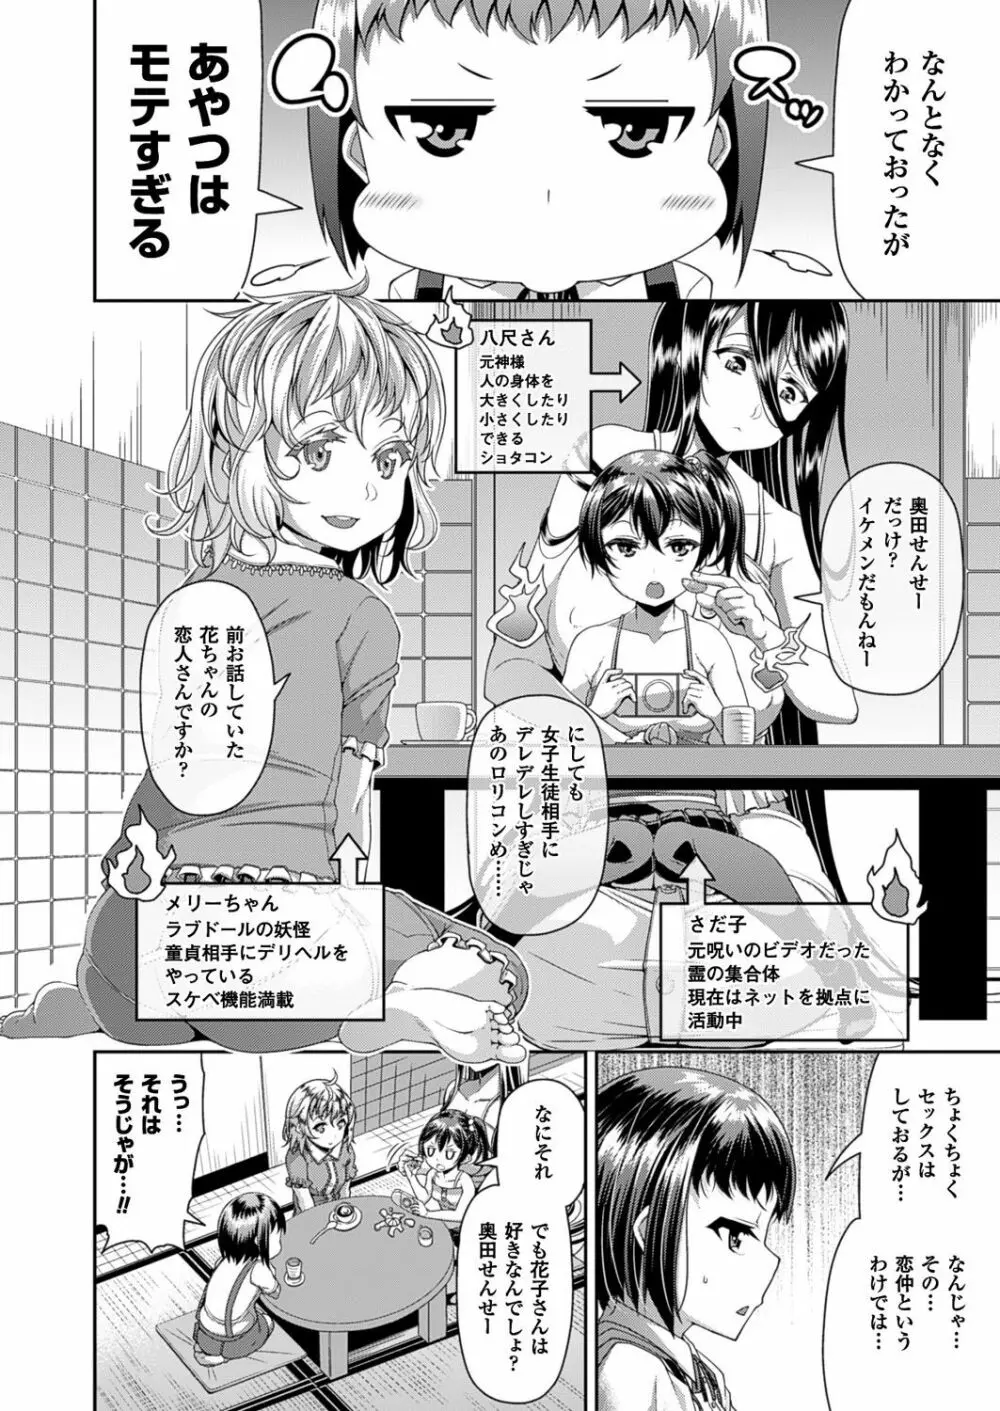 Toshi Densetsu Series Ch. 01-03 41ページ